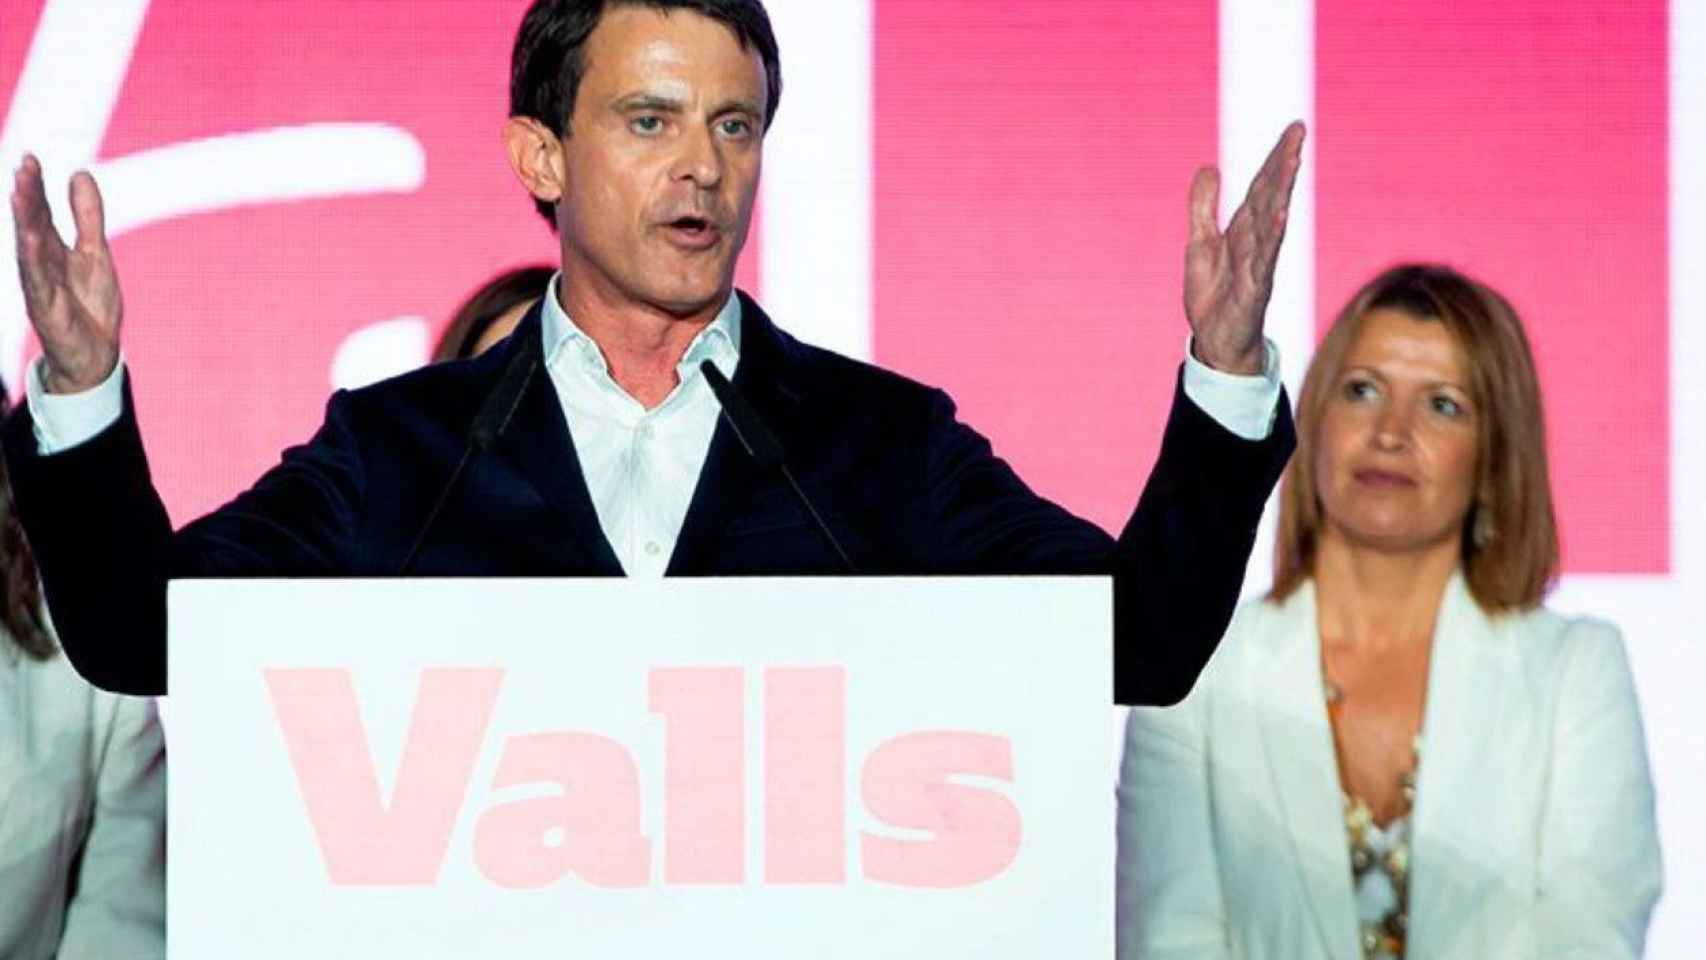 Valls y Parera, que han cargado contra Colau por la cacerolada antimonárquica, en un discurso de Barcelona pel canvi / EFE